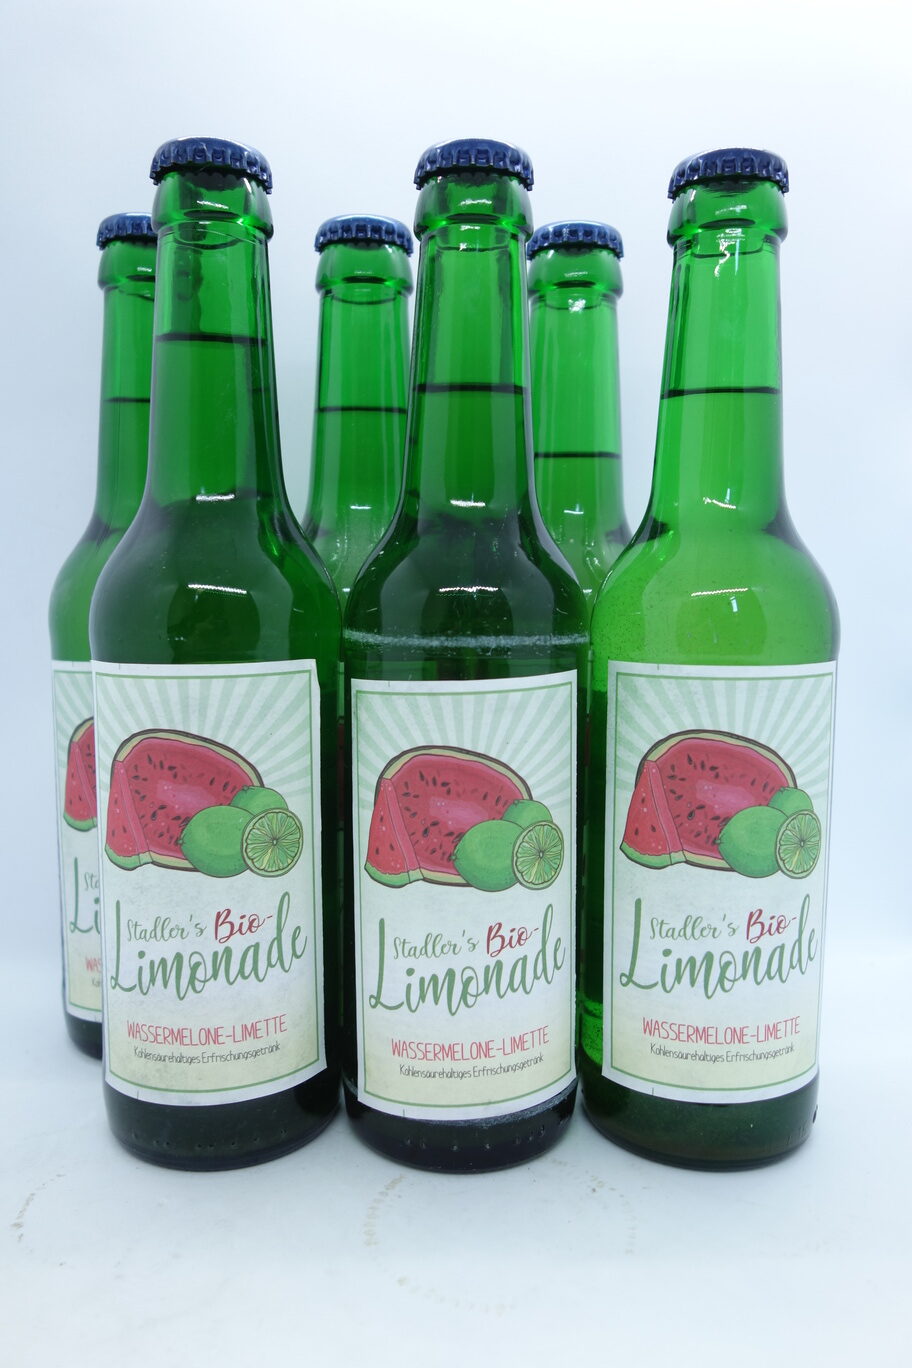 6 0,33l Flaschen der Bio-Limonade Wassermelone-Limette